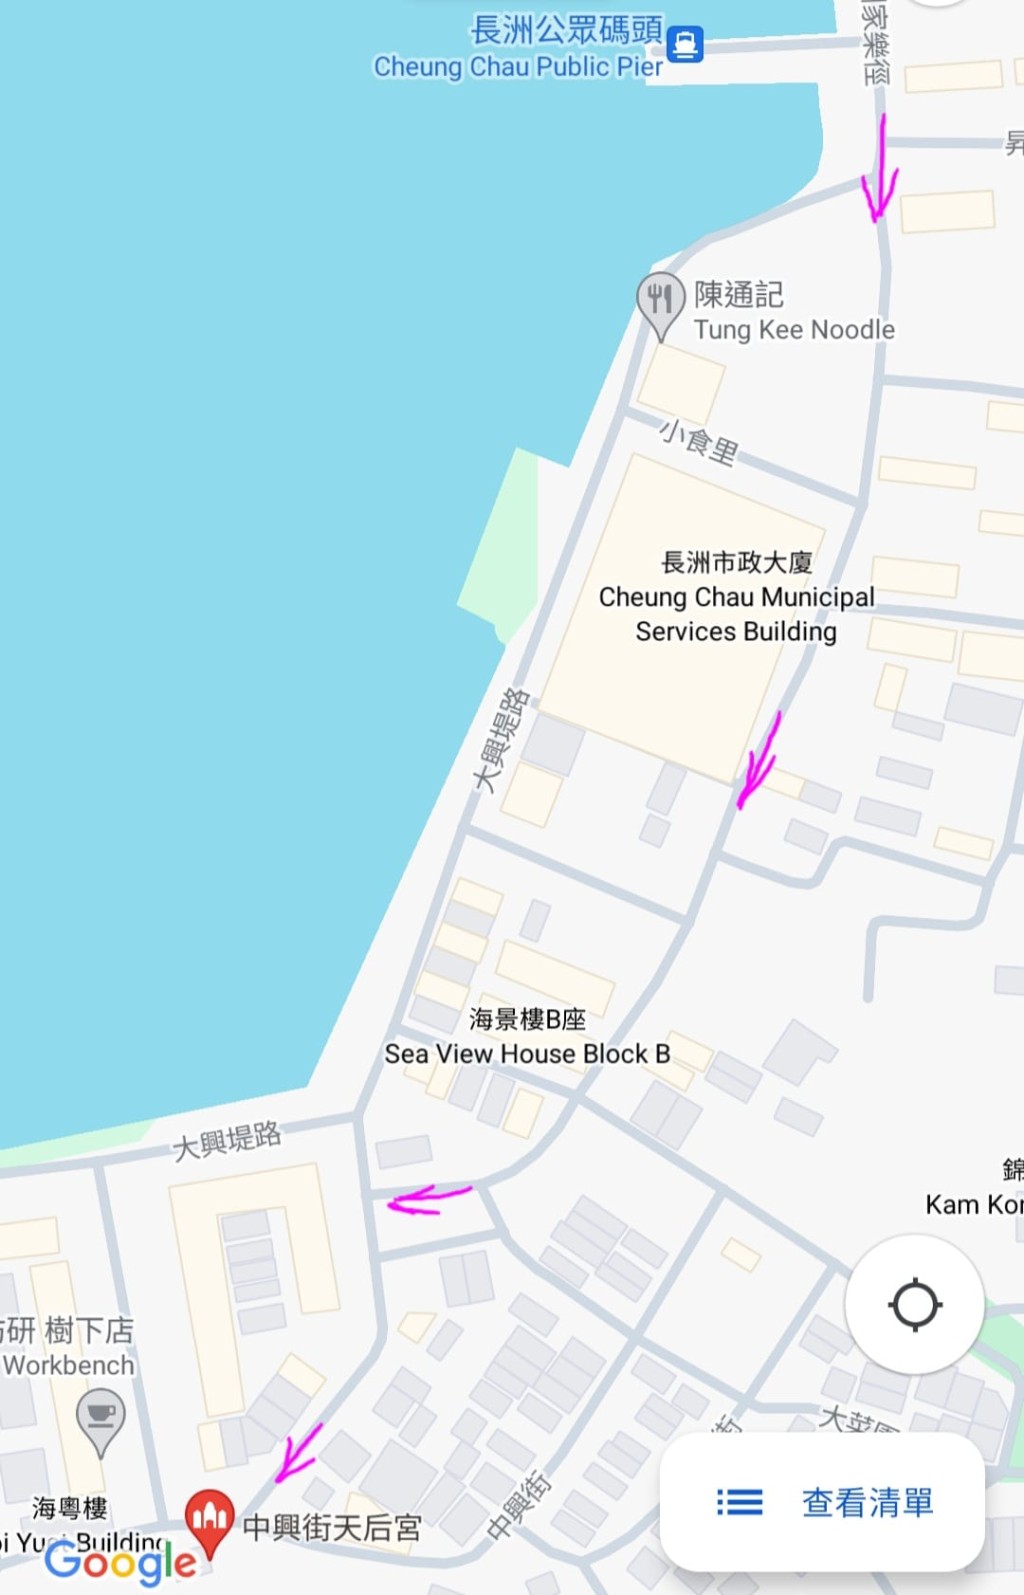 网民附地图，并画上箭咀指路。fb「只谈旧事，不谈政治 (香港」截图怀旧廊)图片